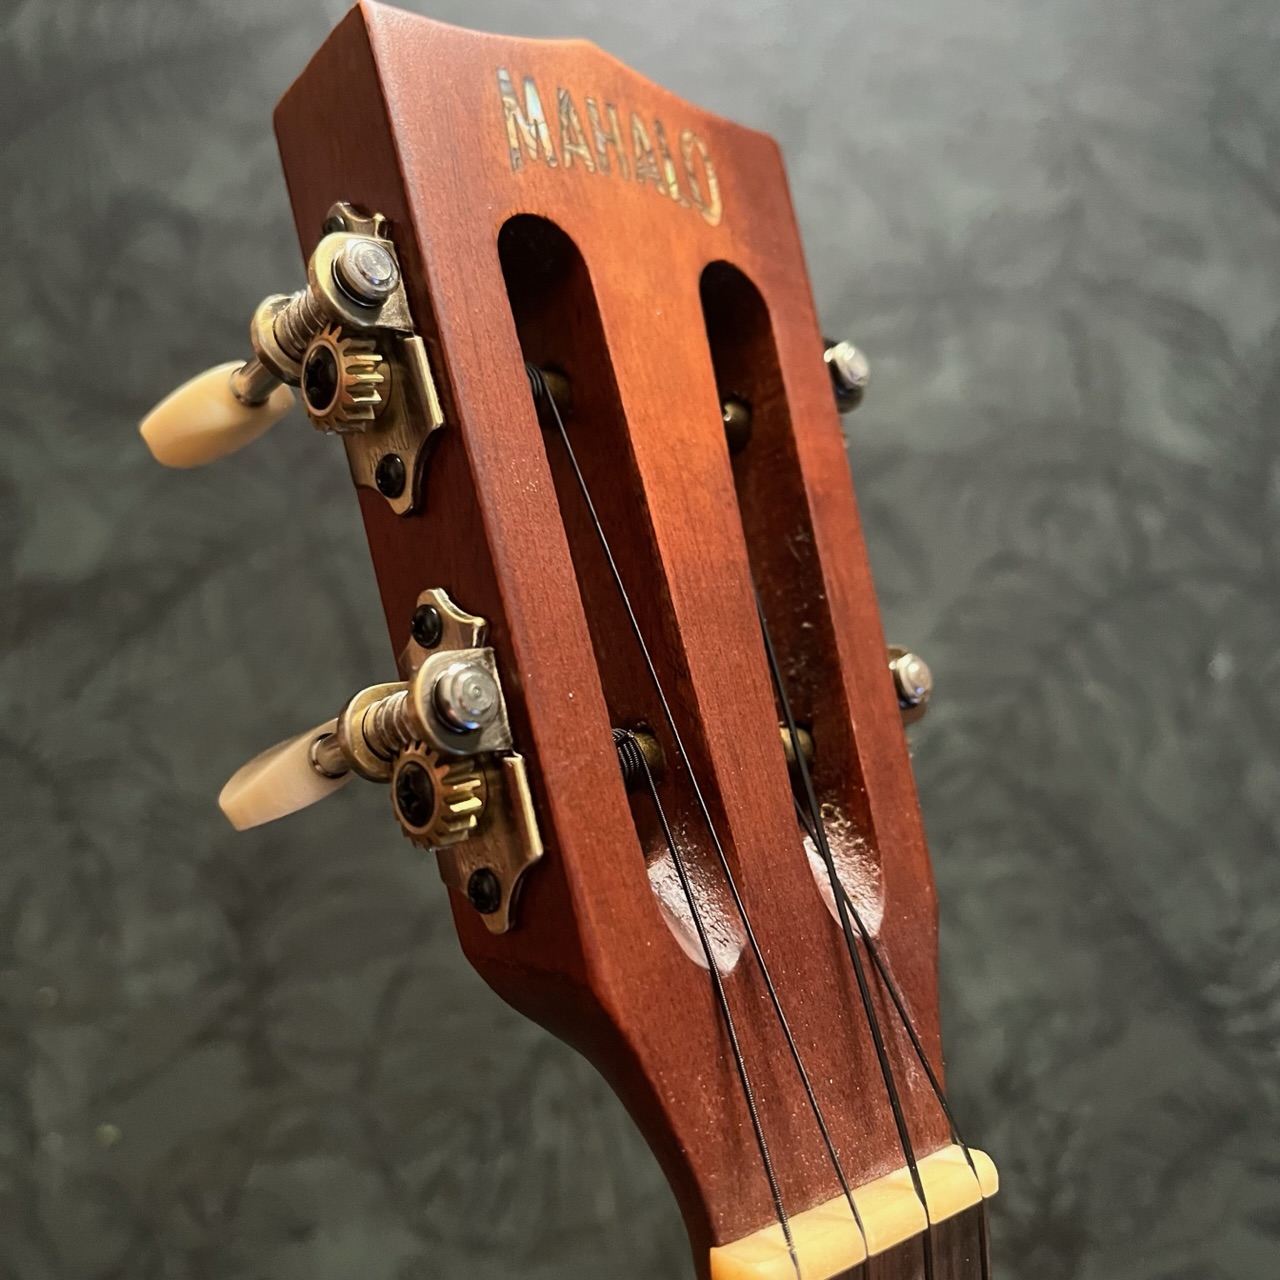 Historic Baritone ukulele